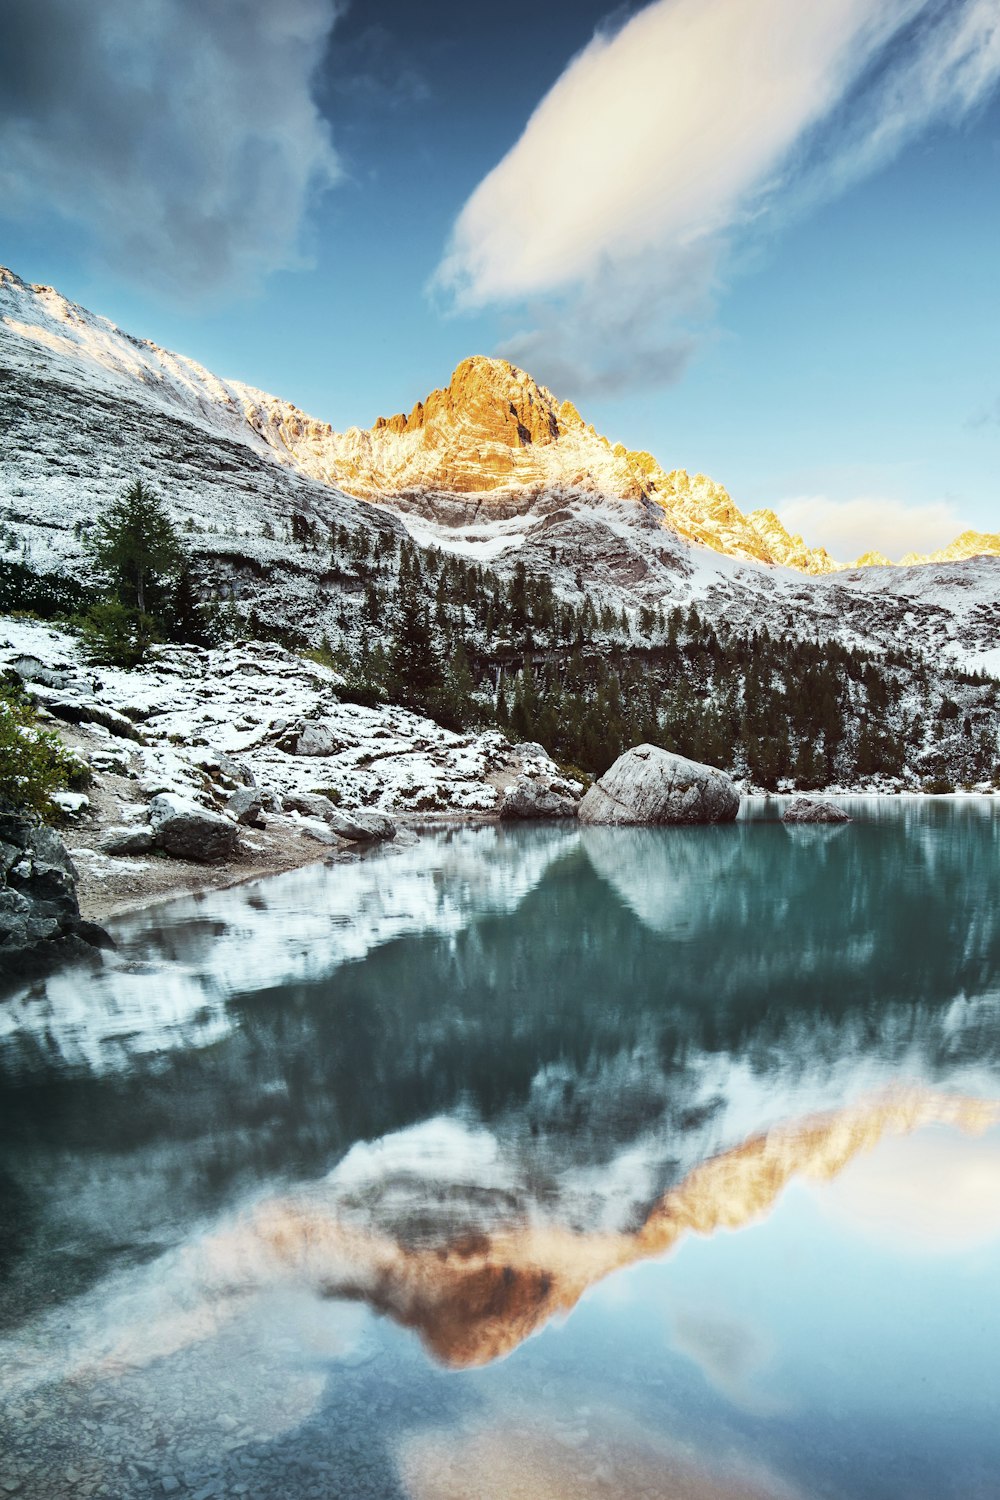 Ein Berg spiegelt sich im stillen Wasser eines Sees